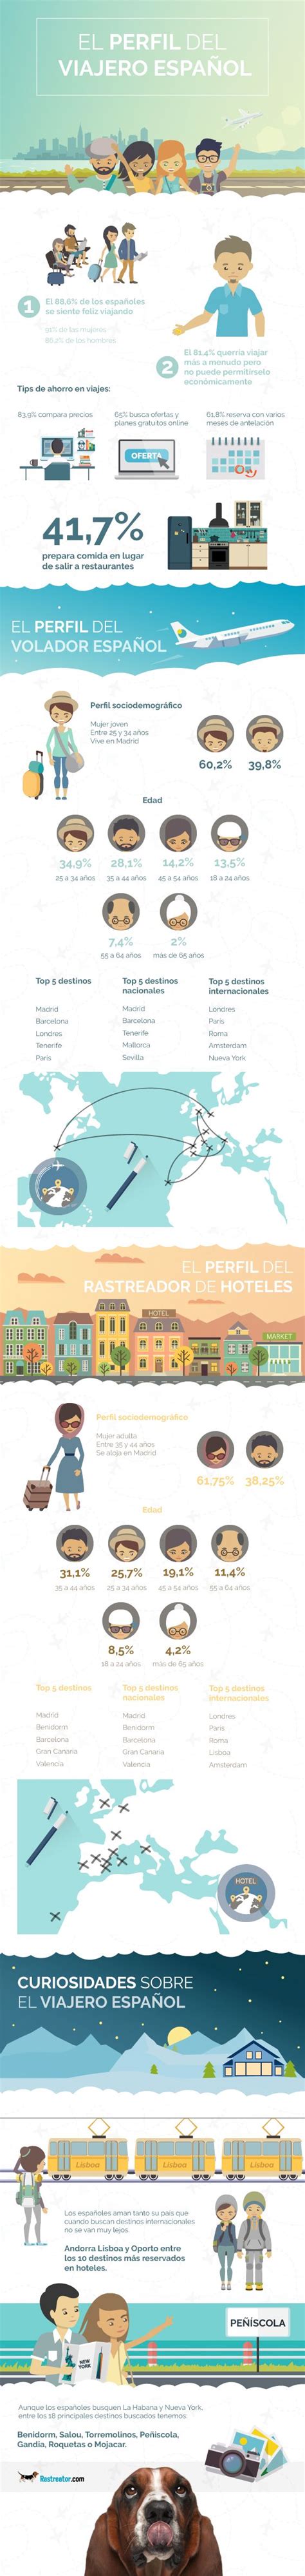 El Perfil Del Viajero Español Infografia Infographic Tourism Tics